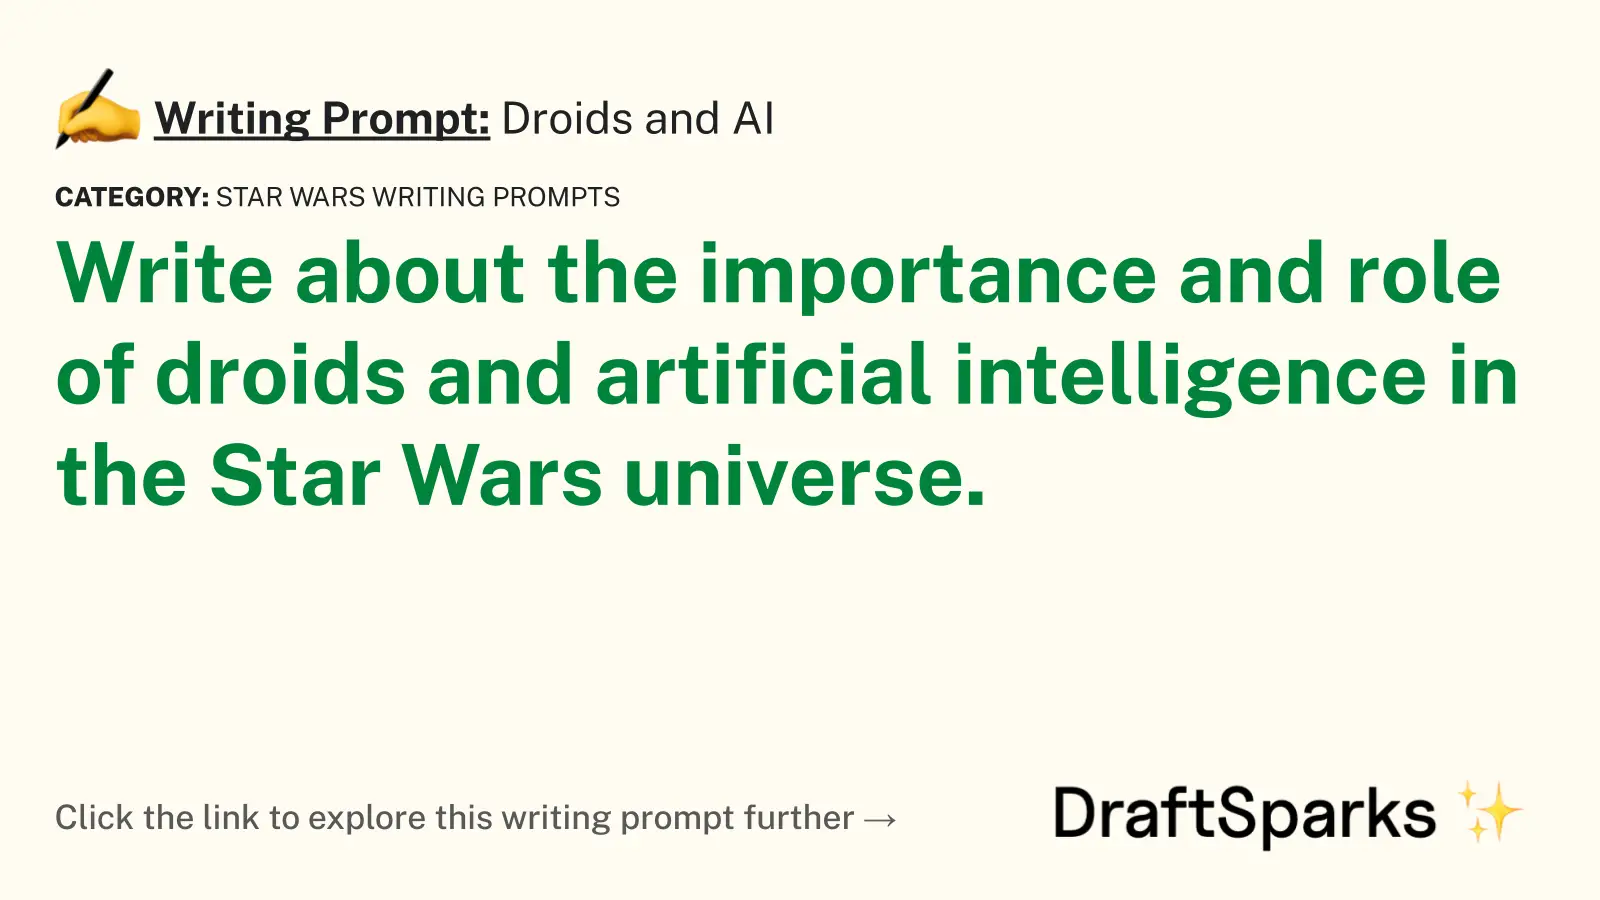 Droids and AI